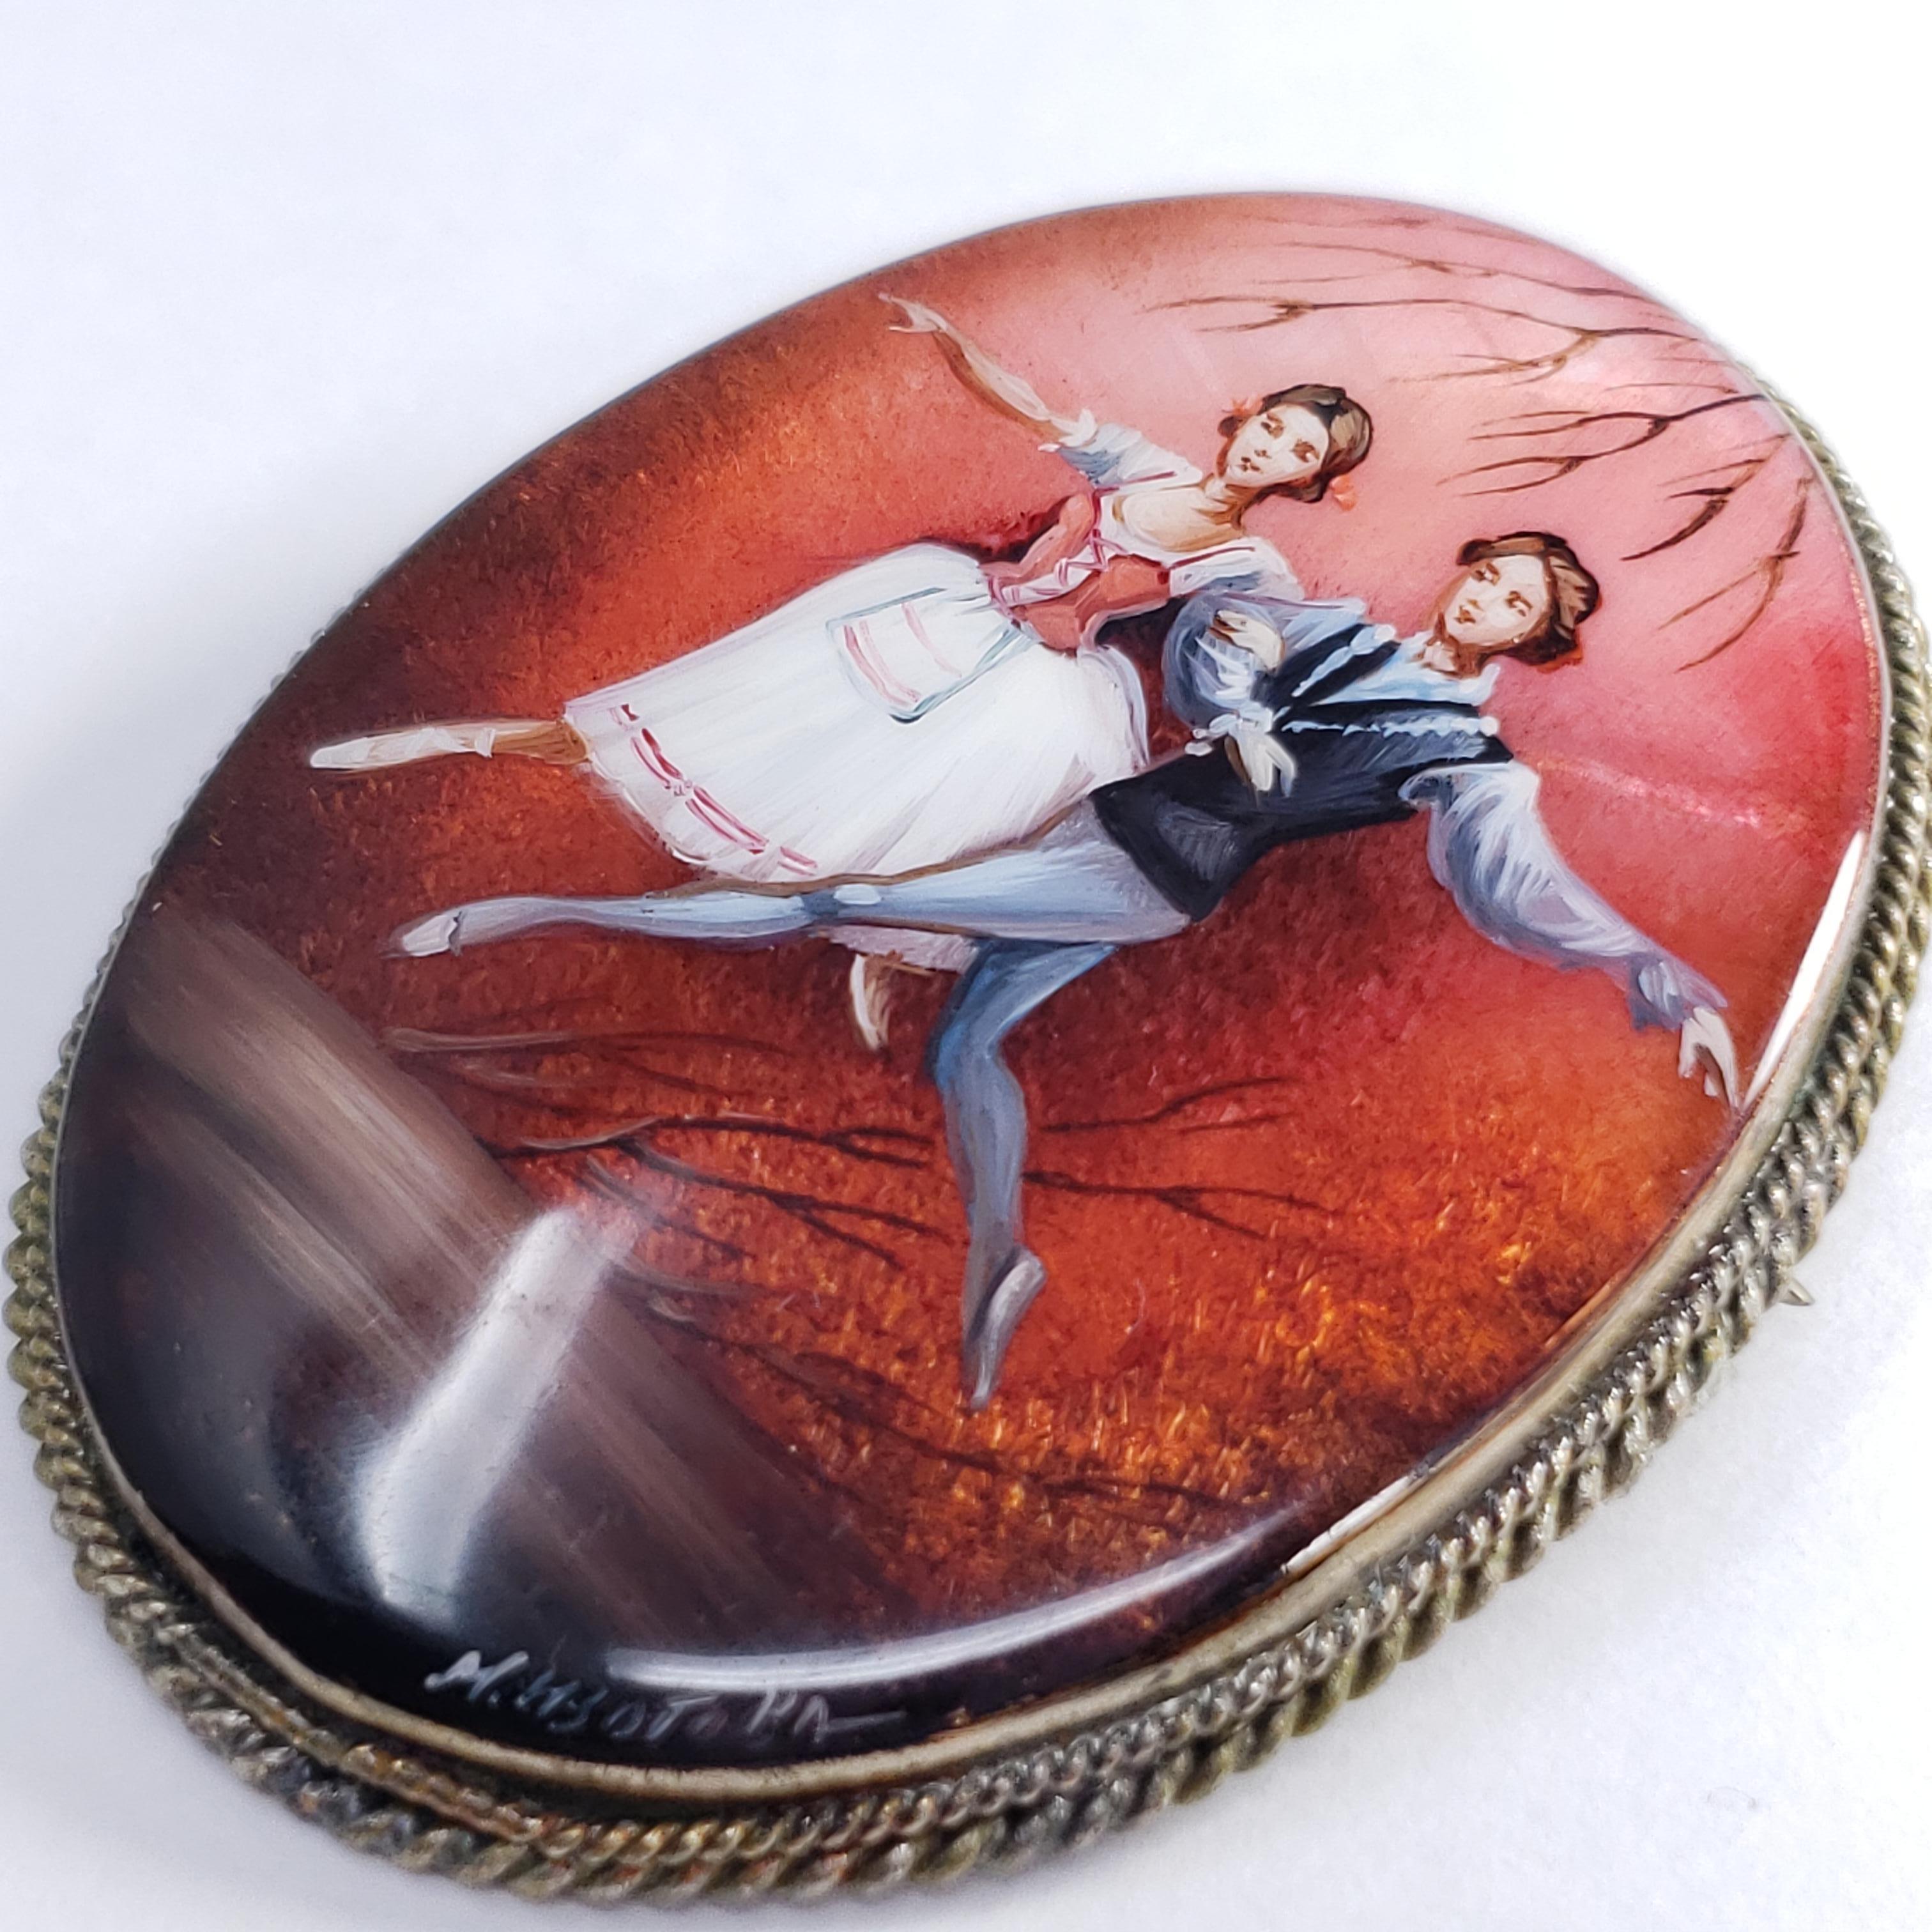 Une exquise broche russe Fedoskino sertie dans une belle lunette en argent allemand. Présente un couple de danseurs sur un fond rouge, peint à la main sur une pierre de nacre avec une couche de laque.

Signé par l'artiste - M Izotova (М